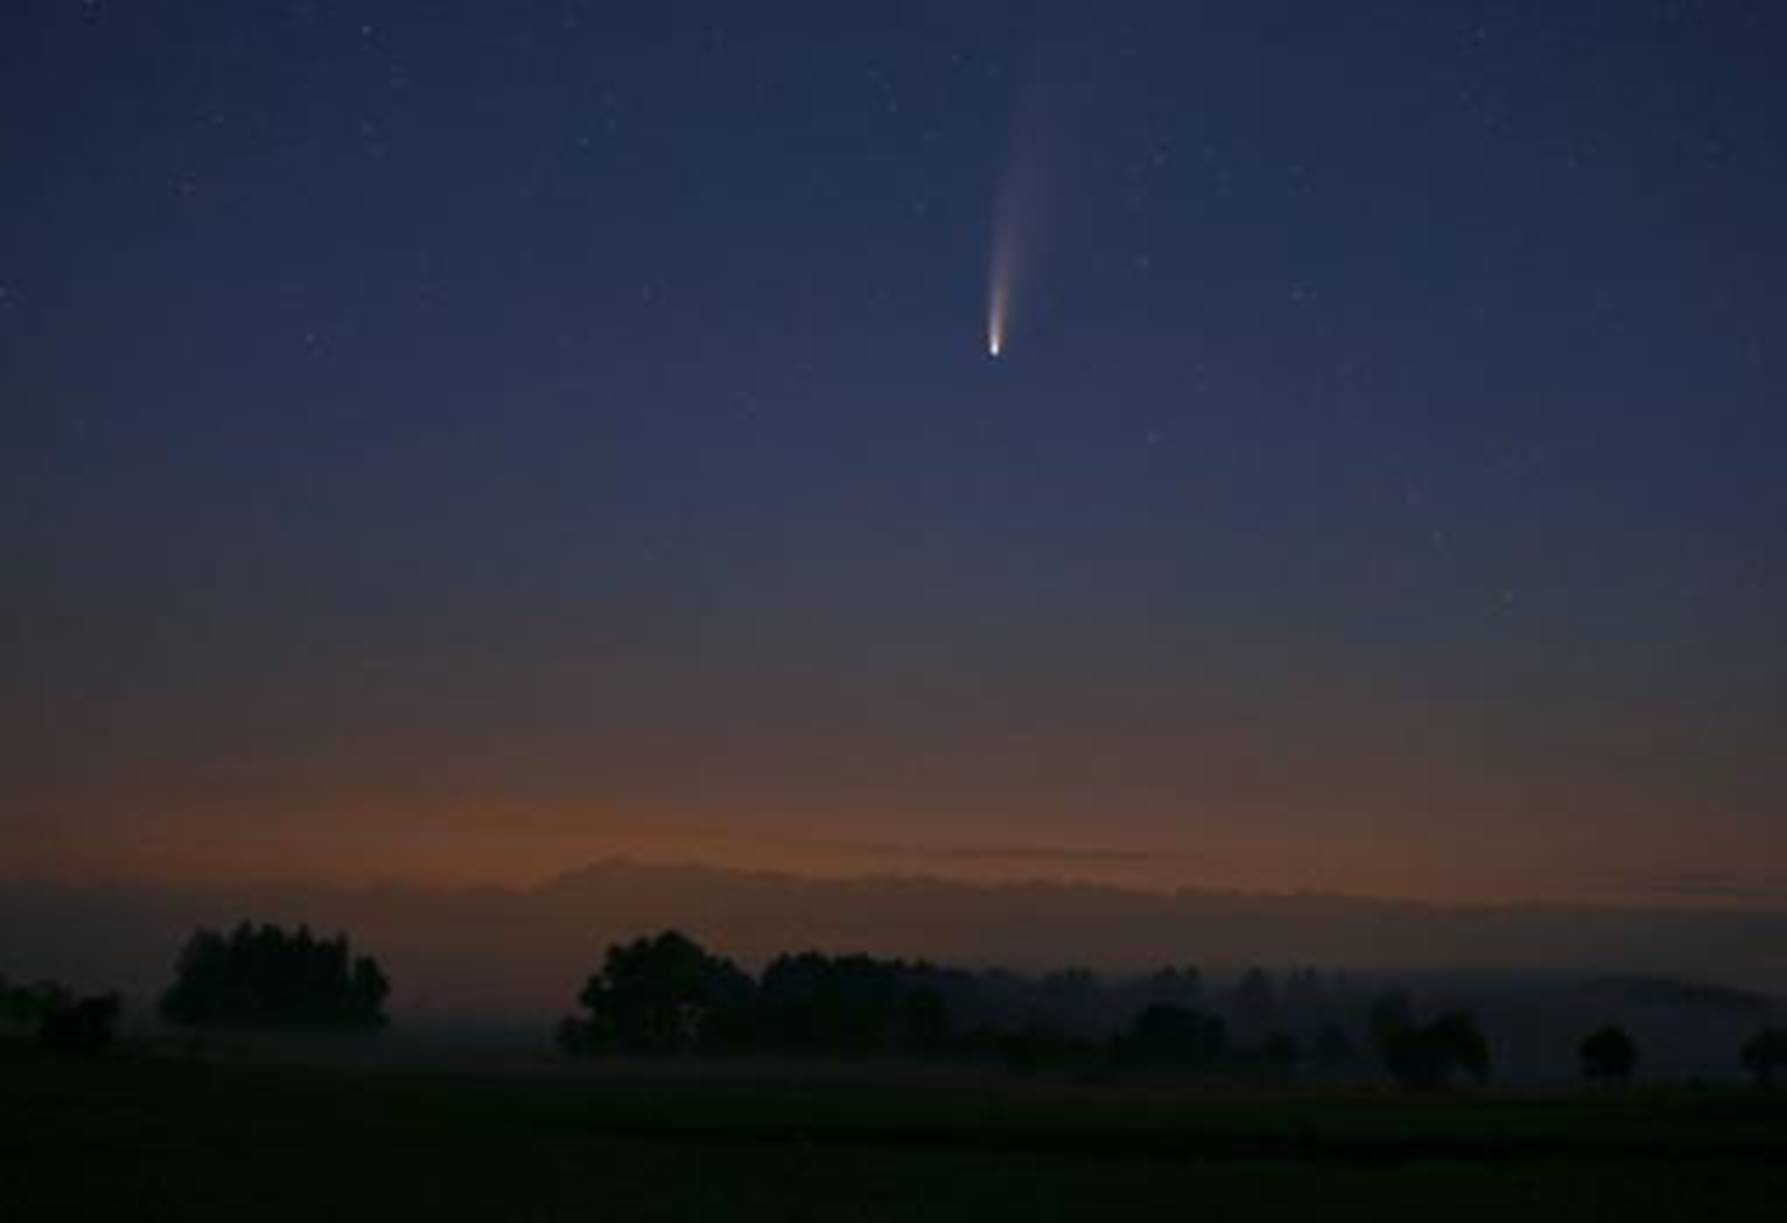 Imagens impressionantes de Neowise, o cometa que pode ser visto a olho nu